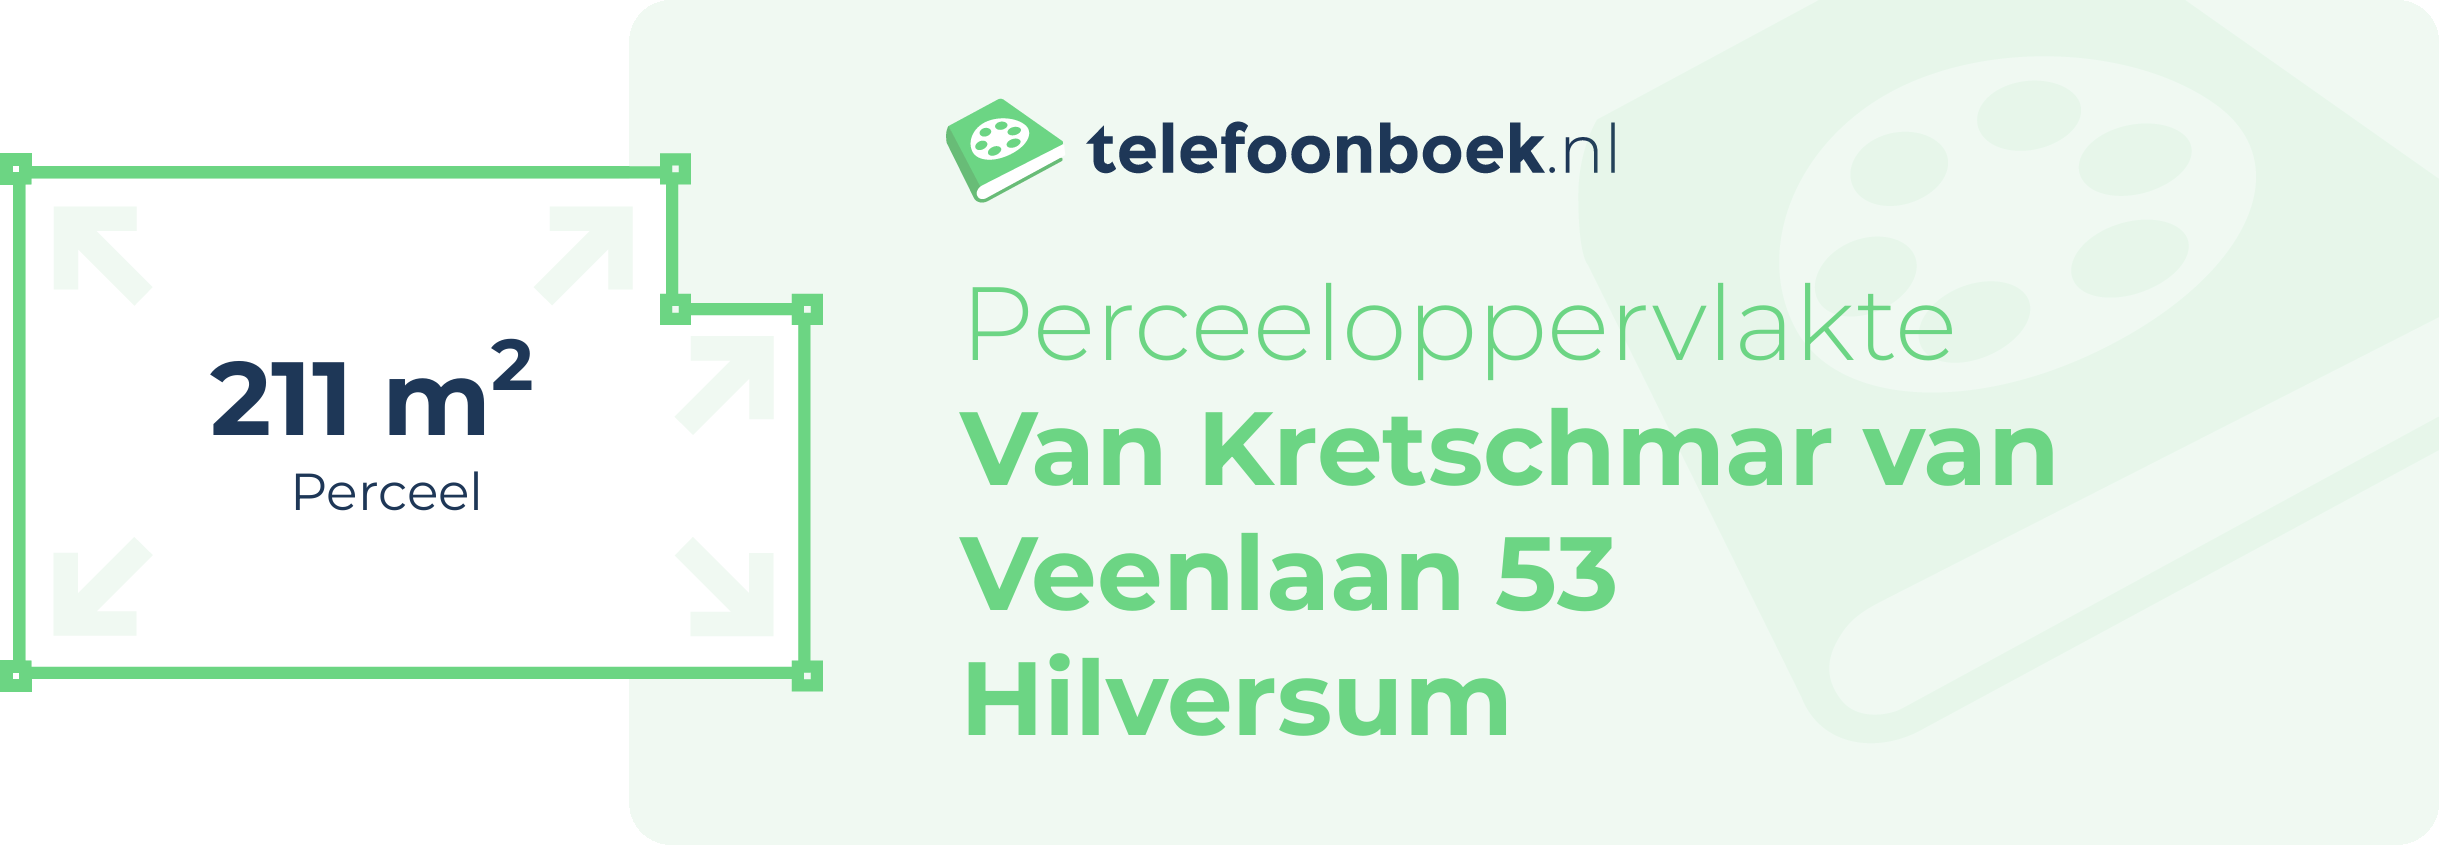 Perceeloppervlakte Van Kretschmar Van Veenlaan 53 Hilversum